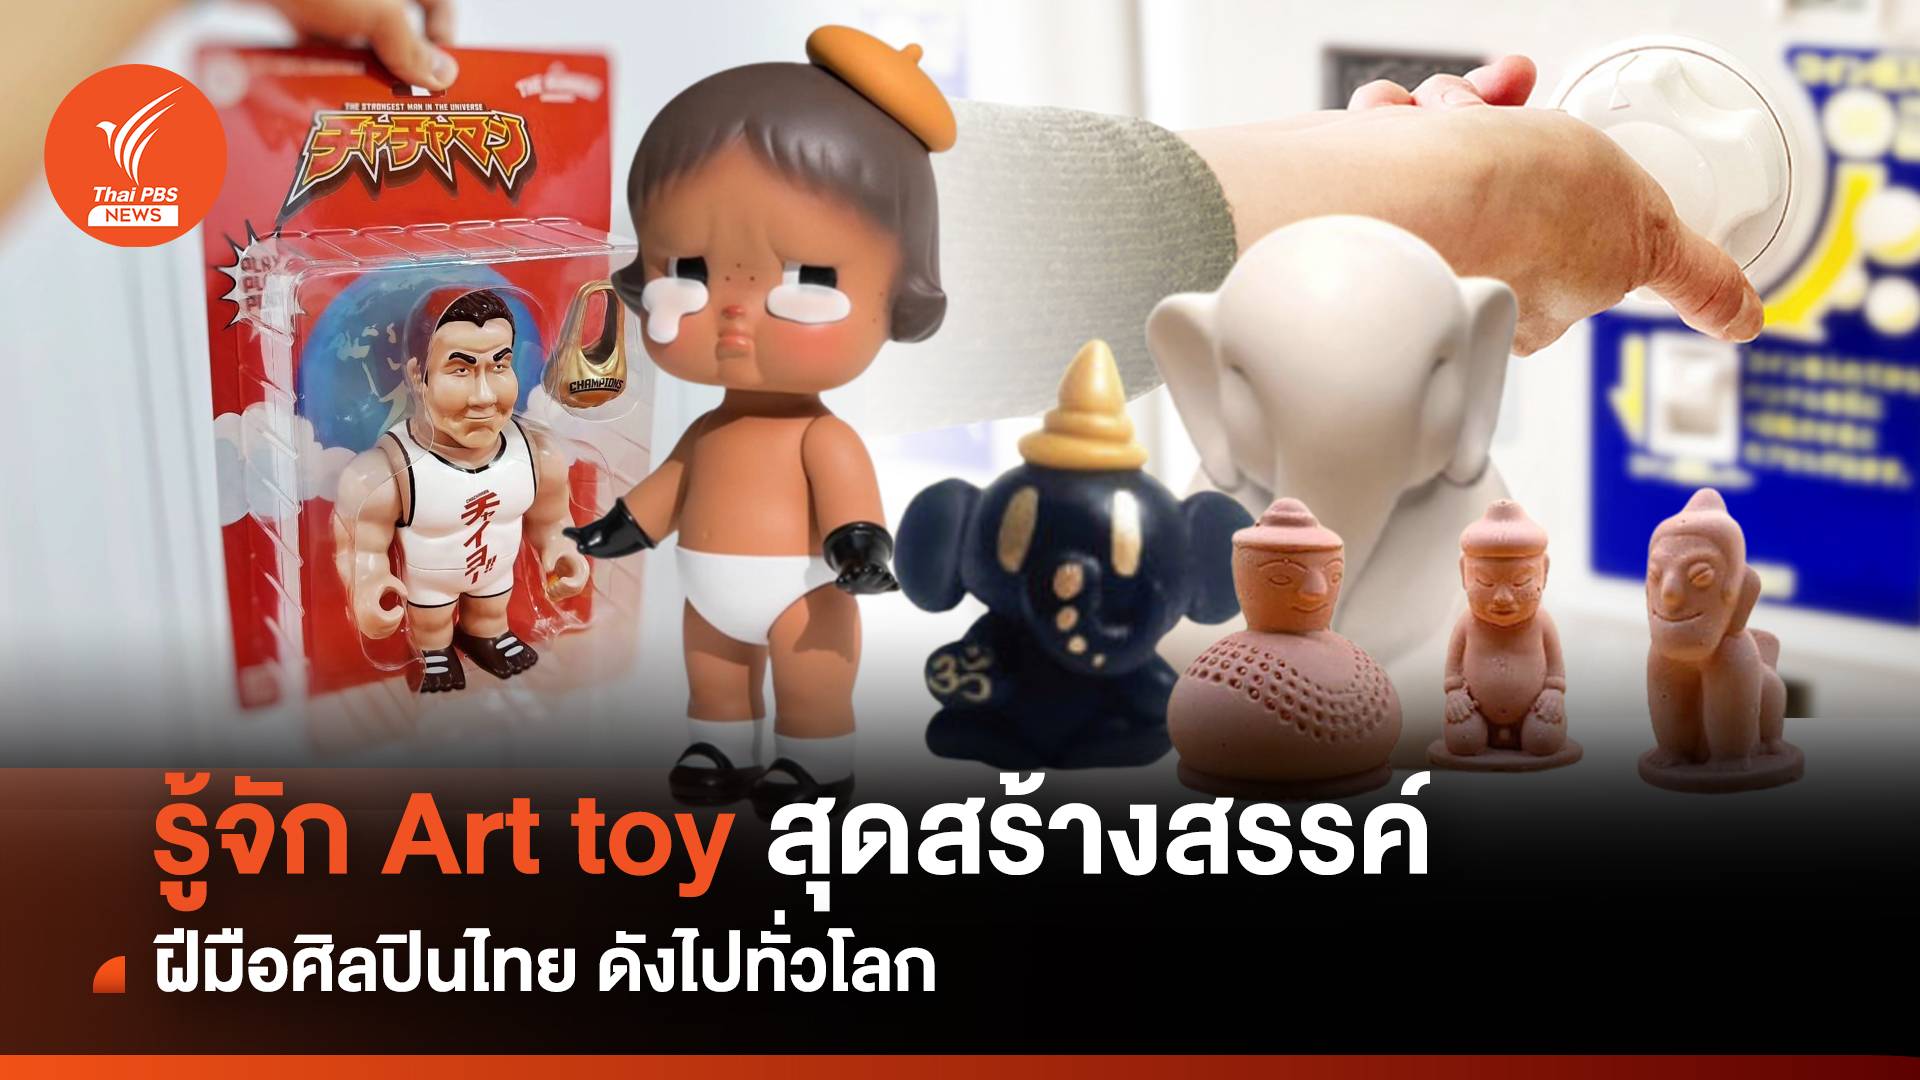 รู้จัก Art toy สุดสร้างสรรค์ ฝีมือศิลปินไทย